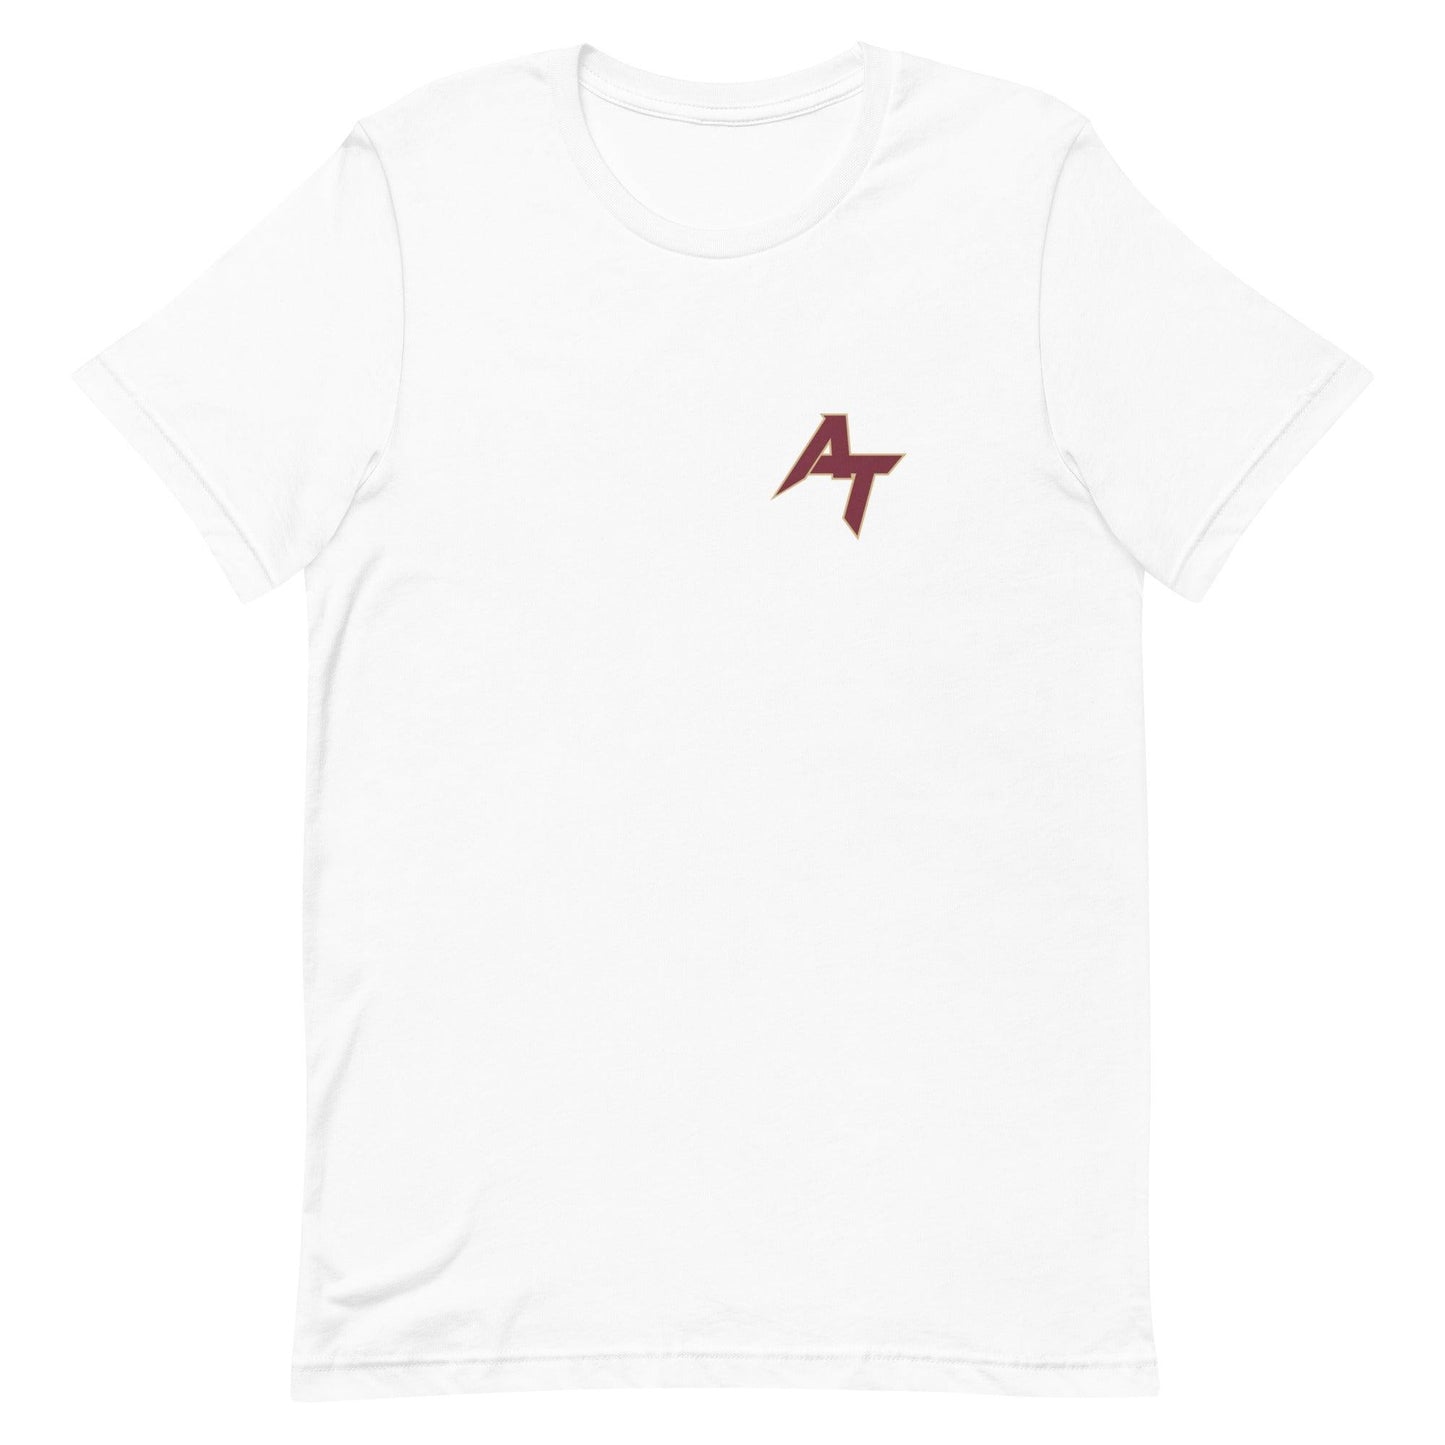 Ayobami Tifase "Elite" t-shirt - Fan Arch